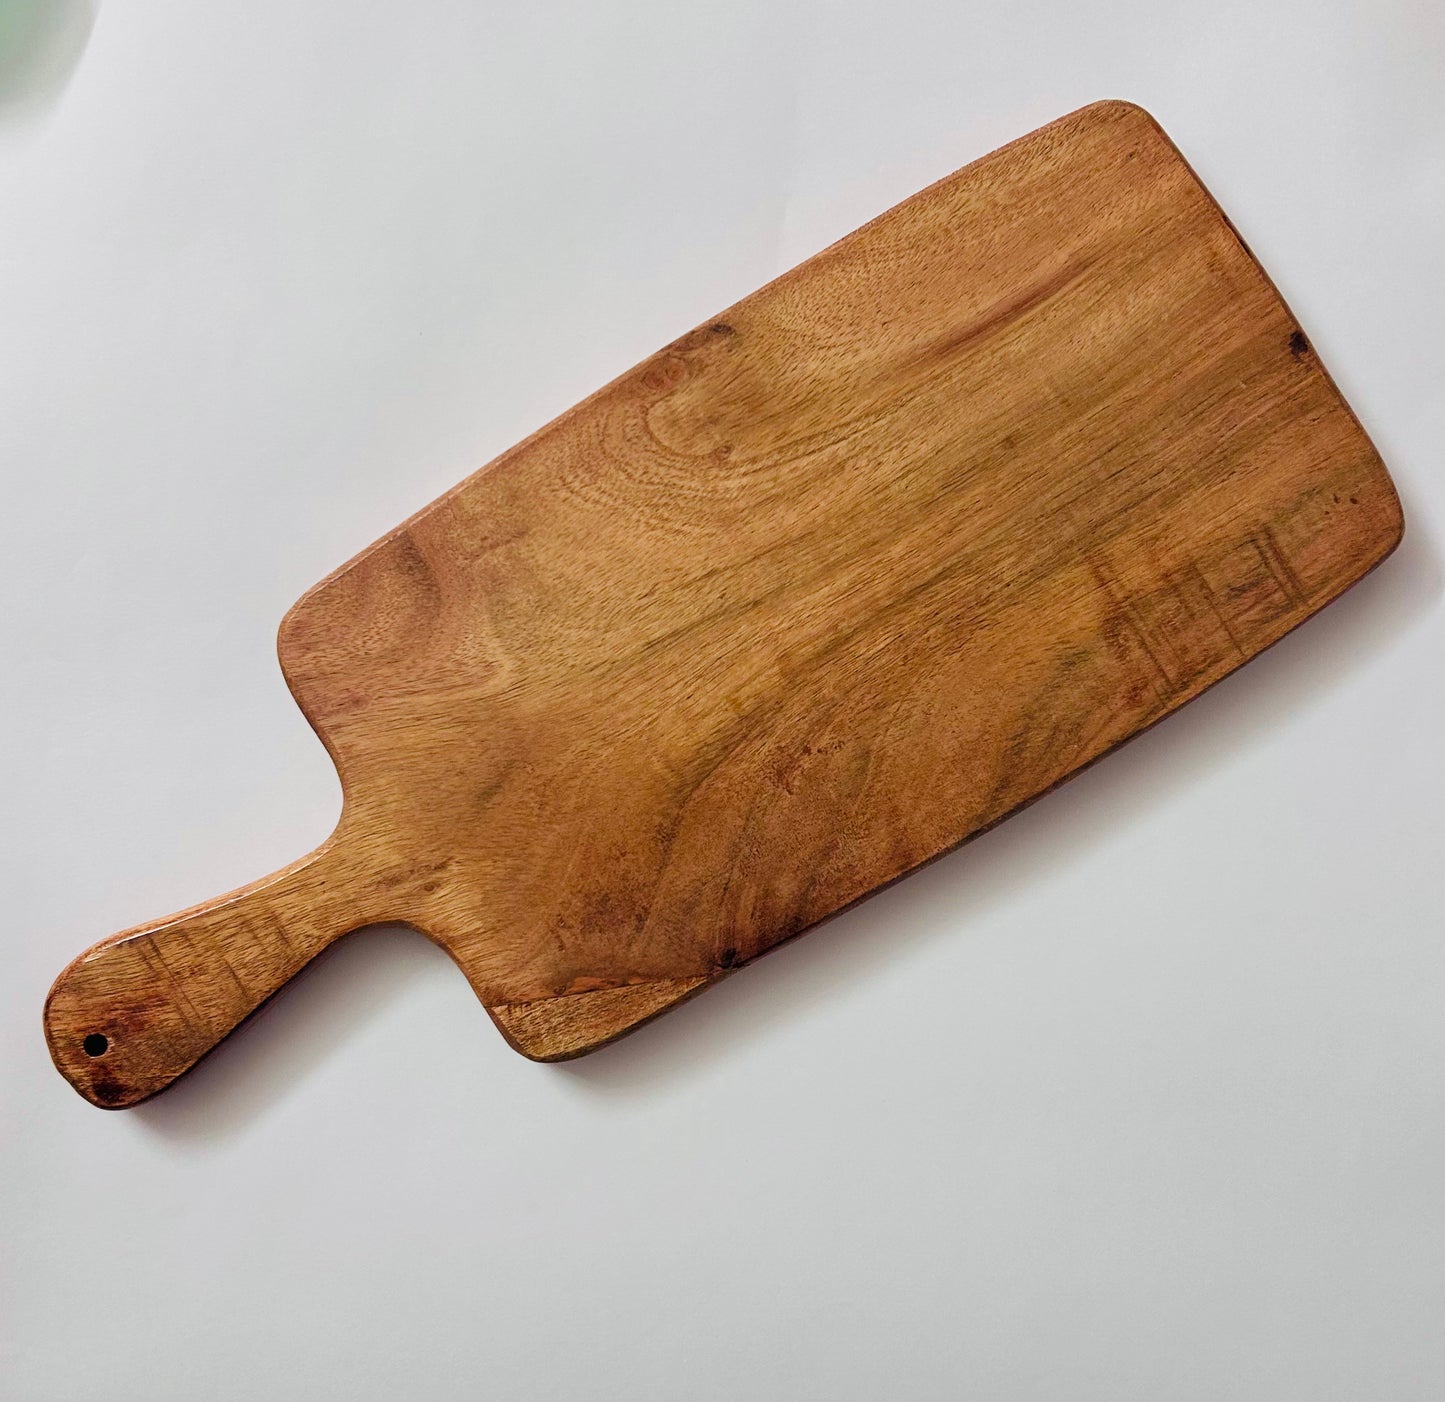 LEMONGINGER Handy Wooden Chopping Board | Cutting Board | Serving Board